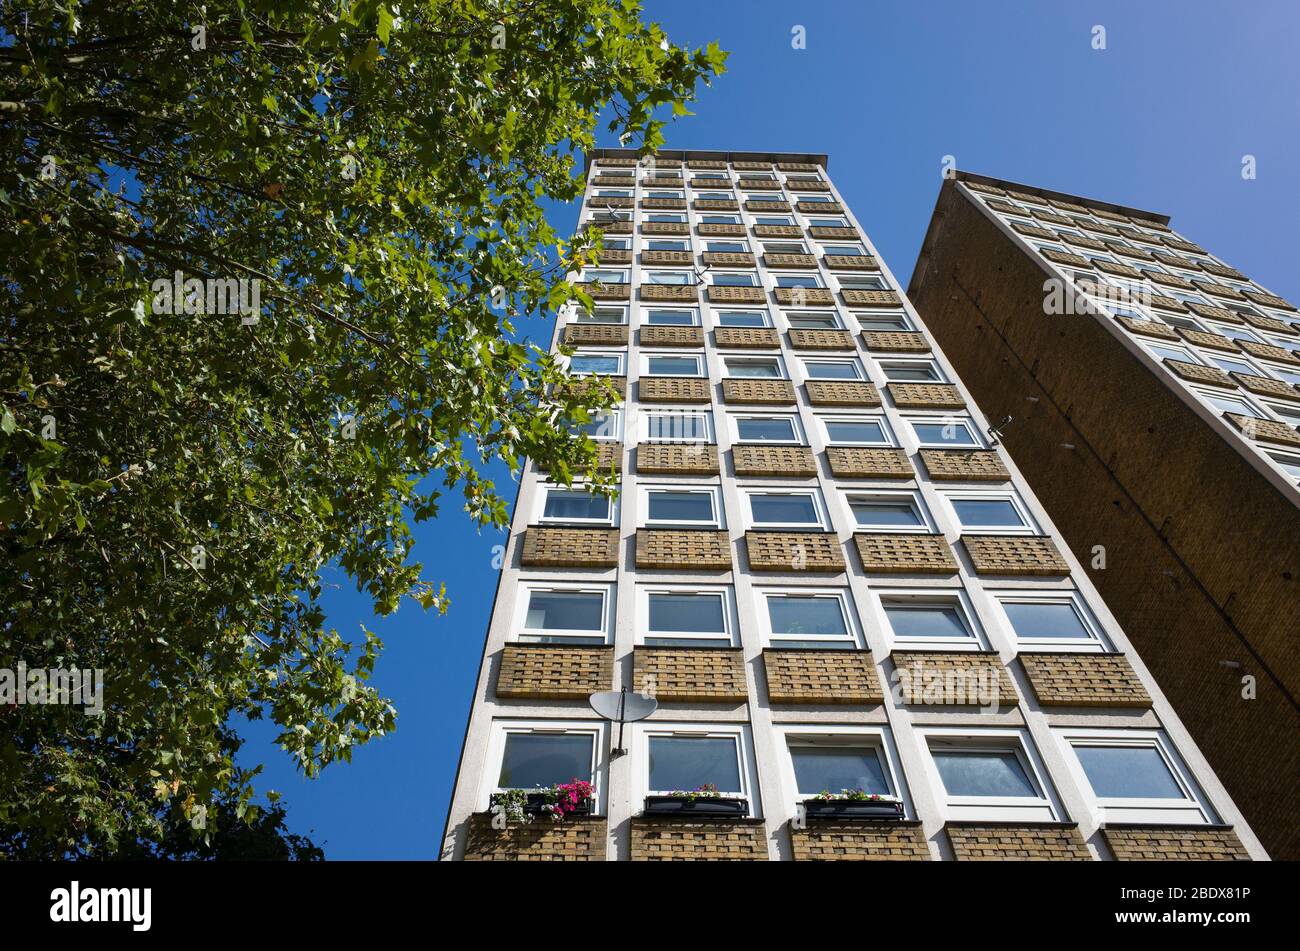 Angle abrupt de Stangate House tour résidentielle des années 1950 blocs de tours d'appartements n Lambeth Londres Angleterre Royaume-Uni Banque D'Images